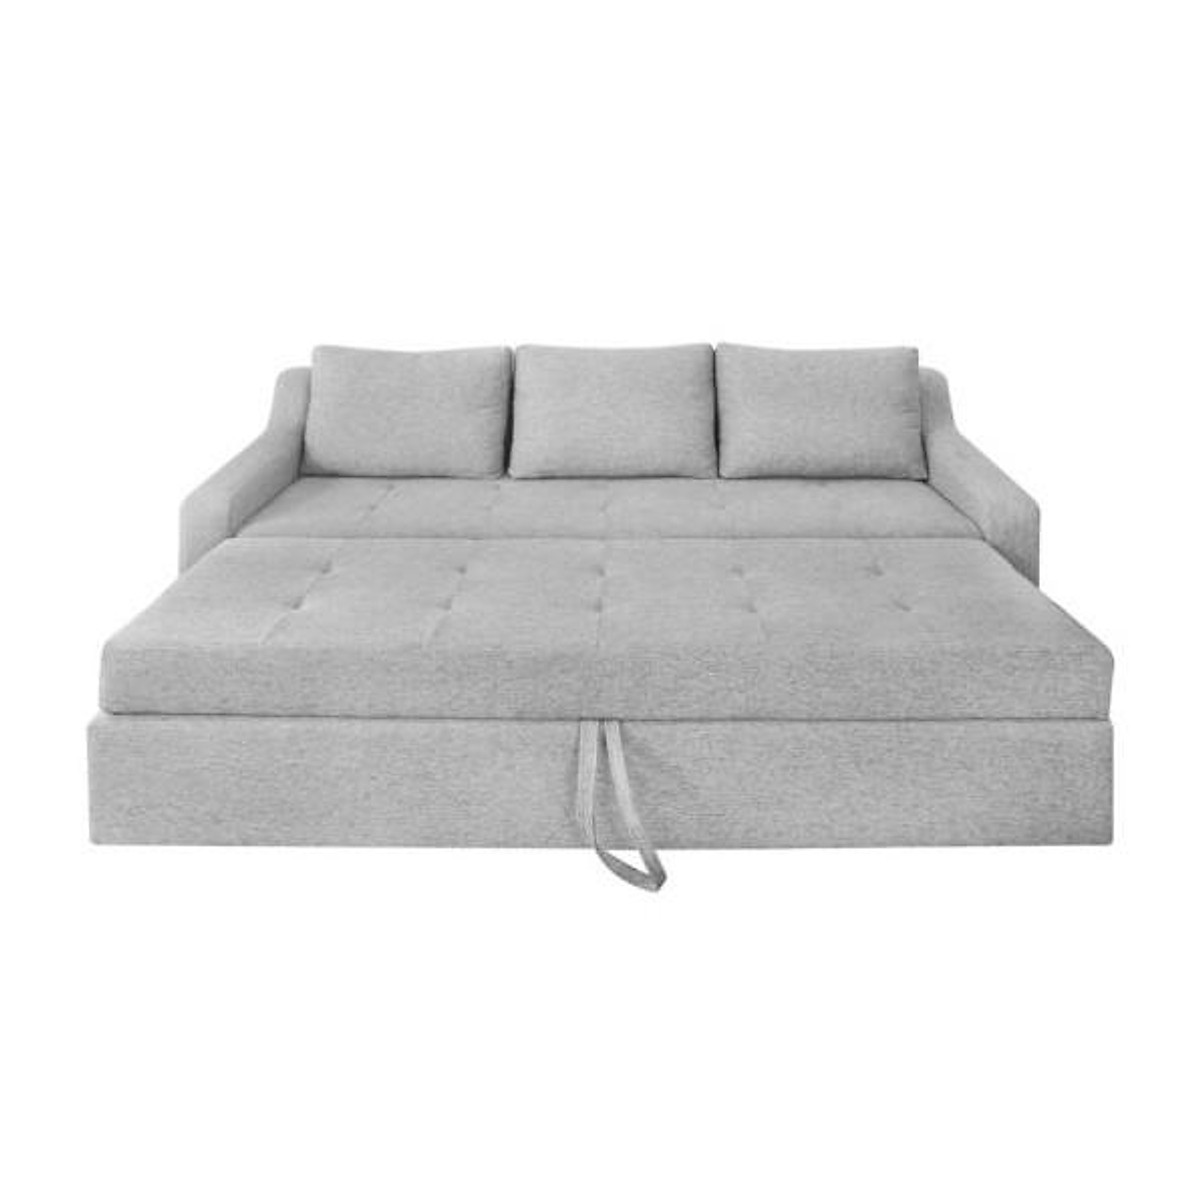 Sofa giường kéo Tundo màu xám